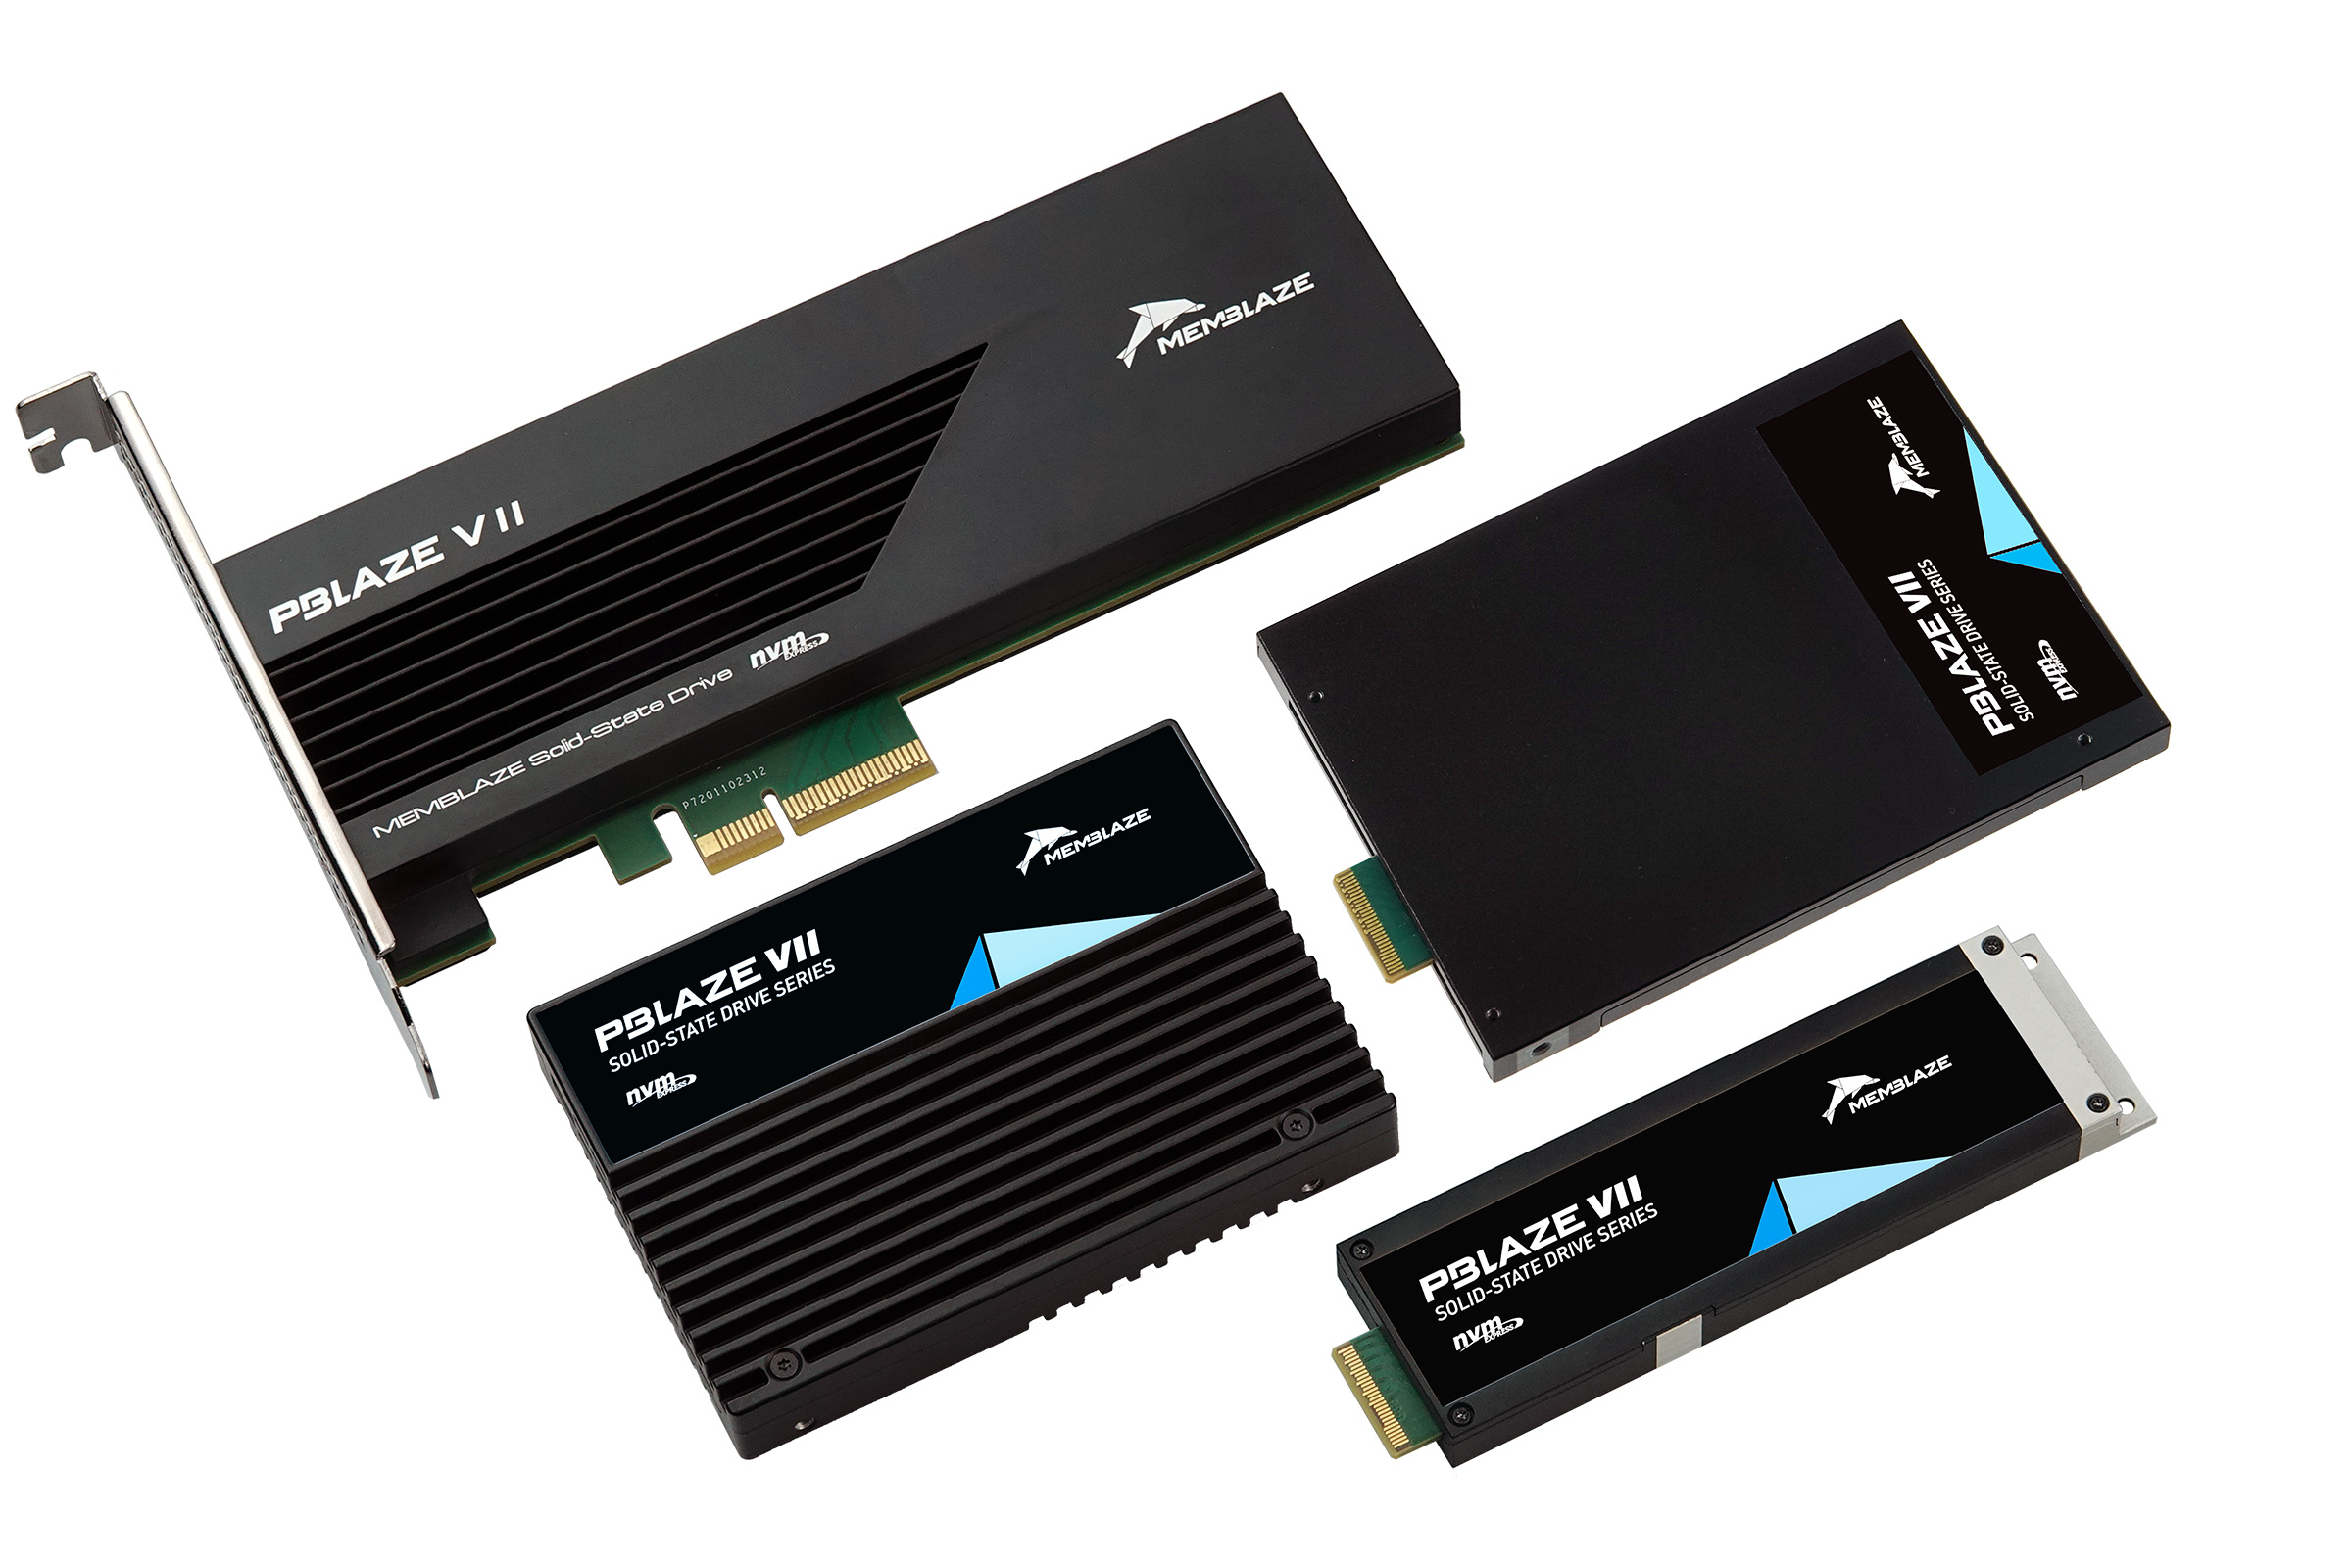 PBlaze7 7940 Series PCIe 50 Enterprise SSD